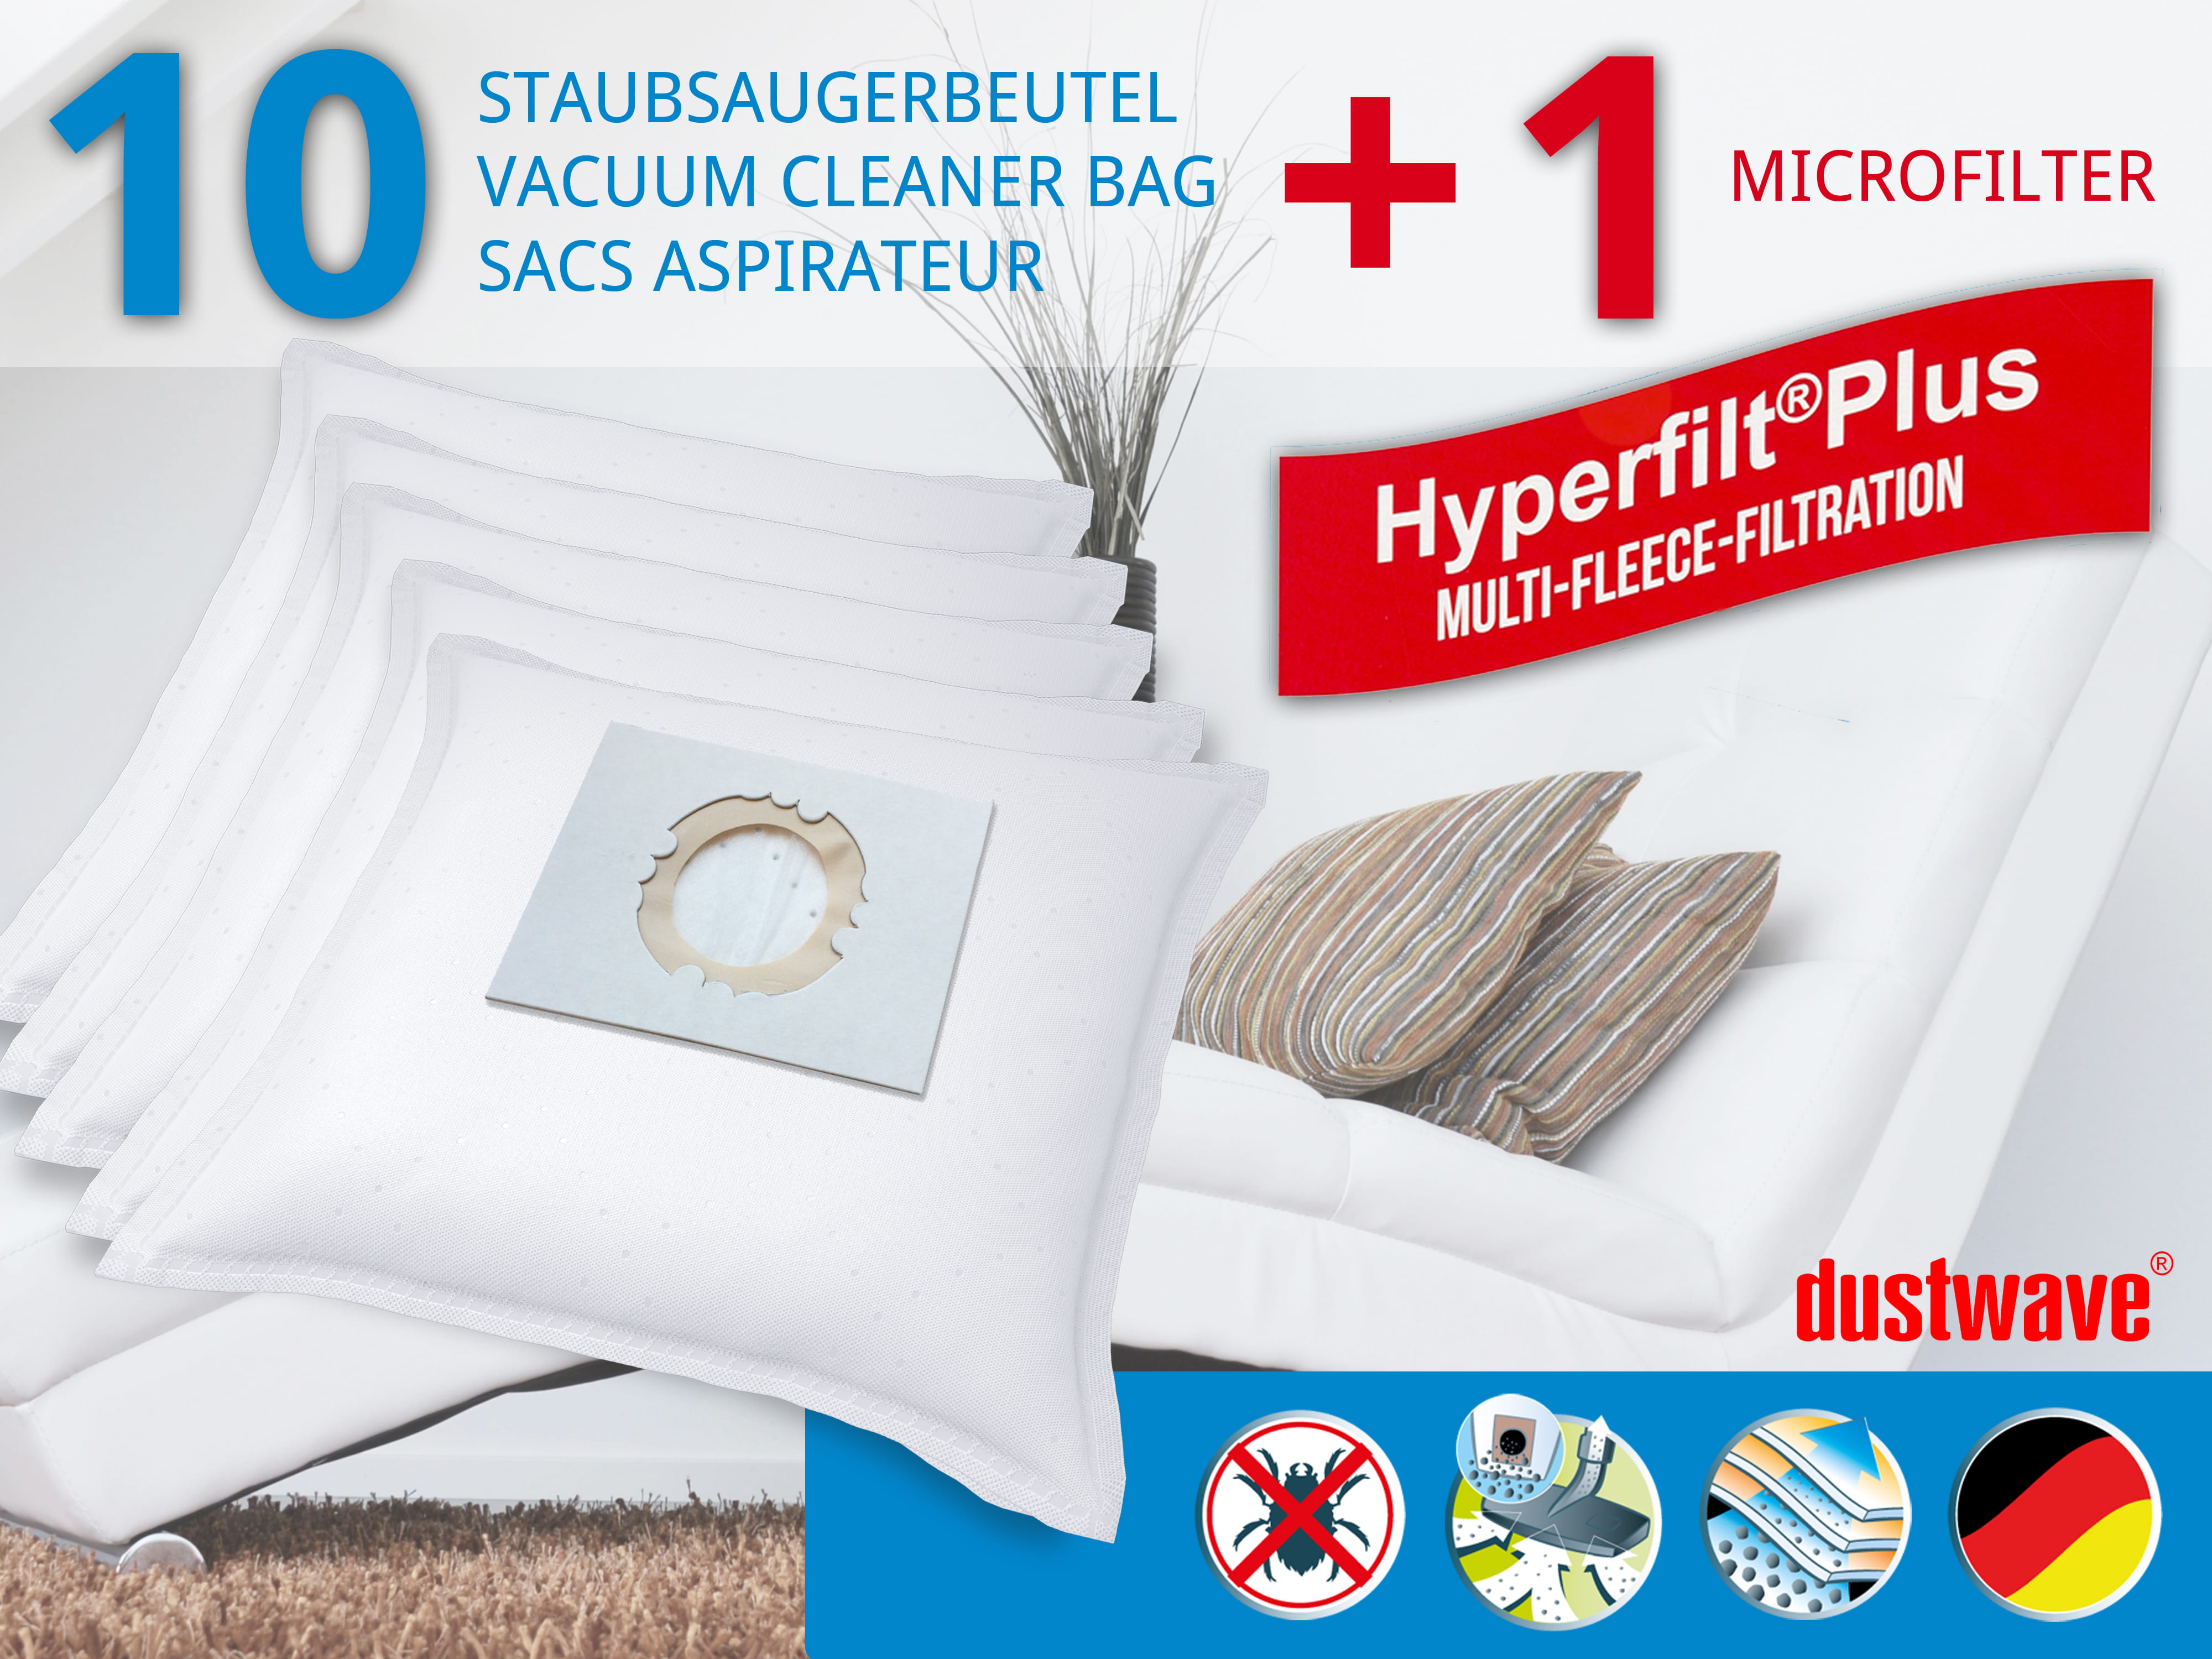 Dustwave® 10 Staubsaugerbeutel für Hoover BD S6145001 - hocheffizient, mehrlagiges Mikrovlies mit Hygieneverschluss - Made in Germany